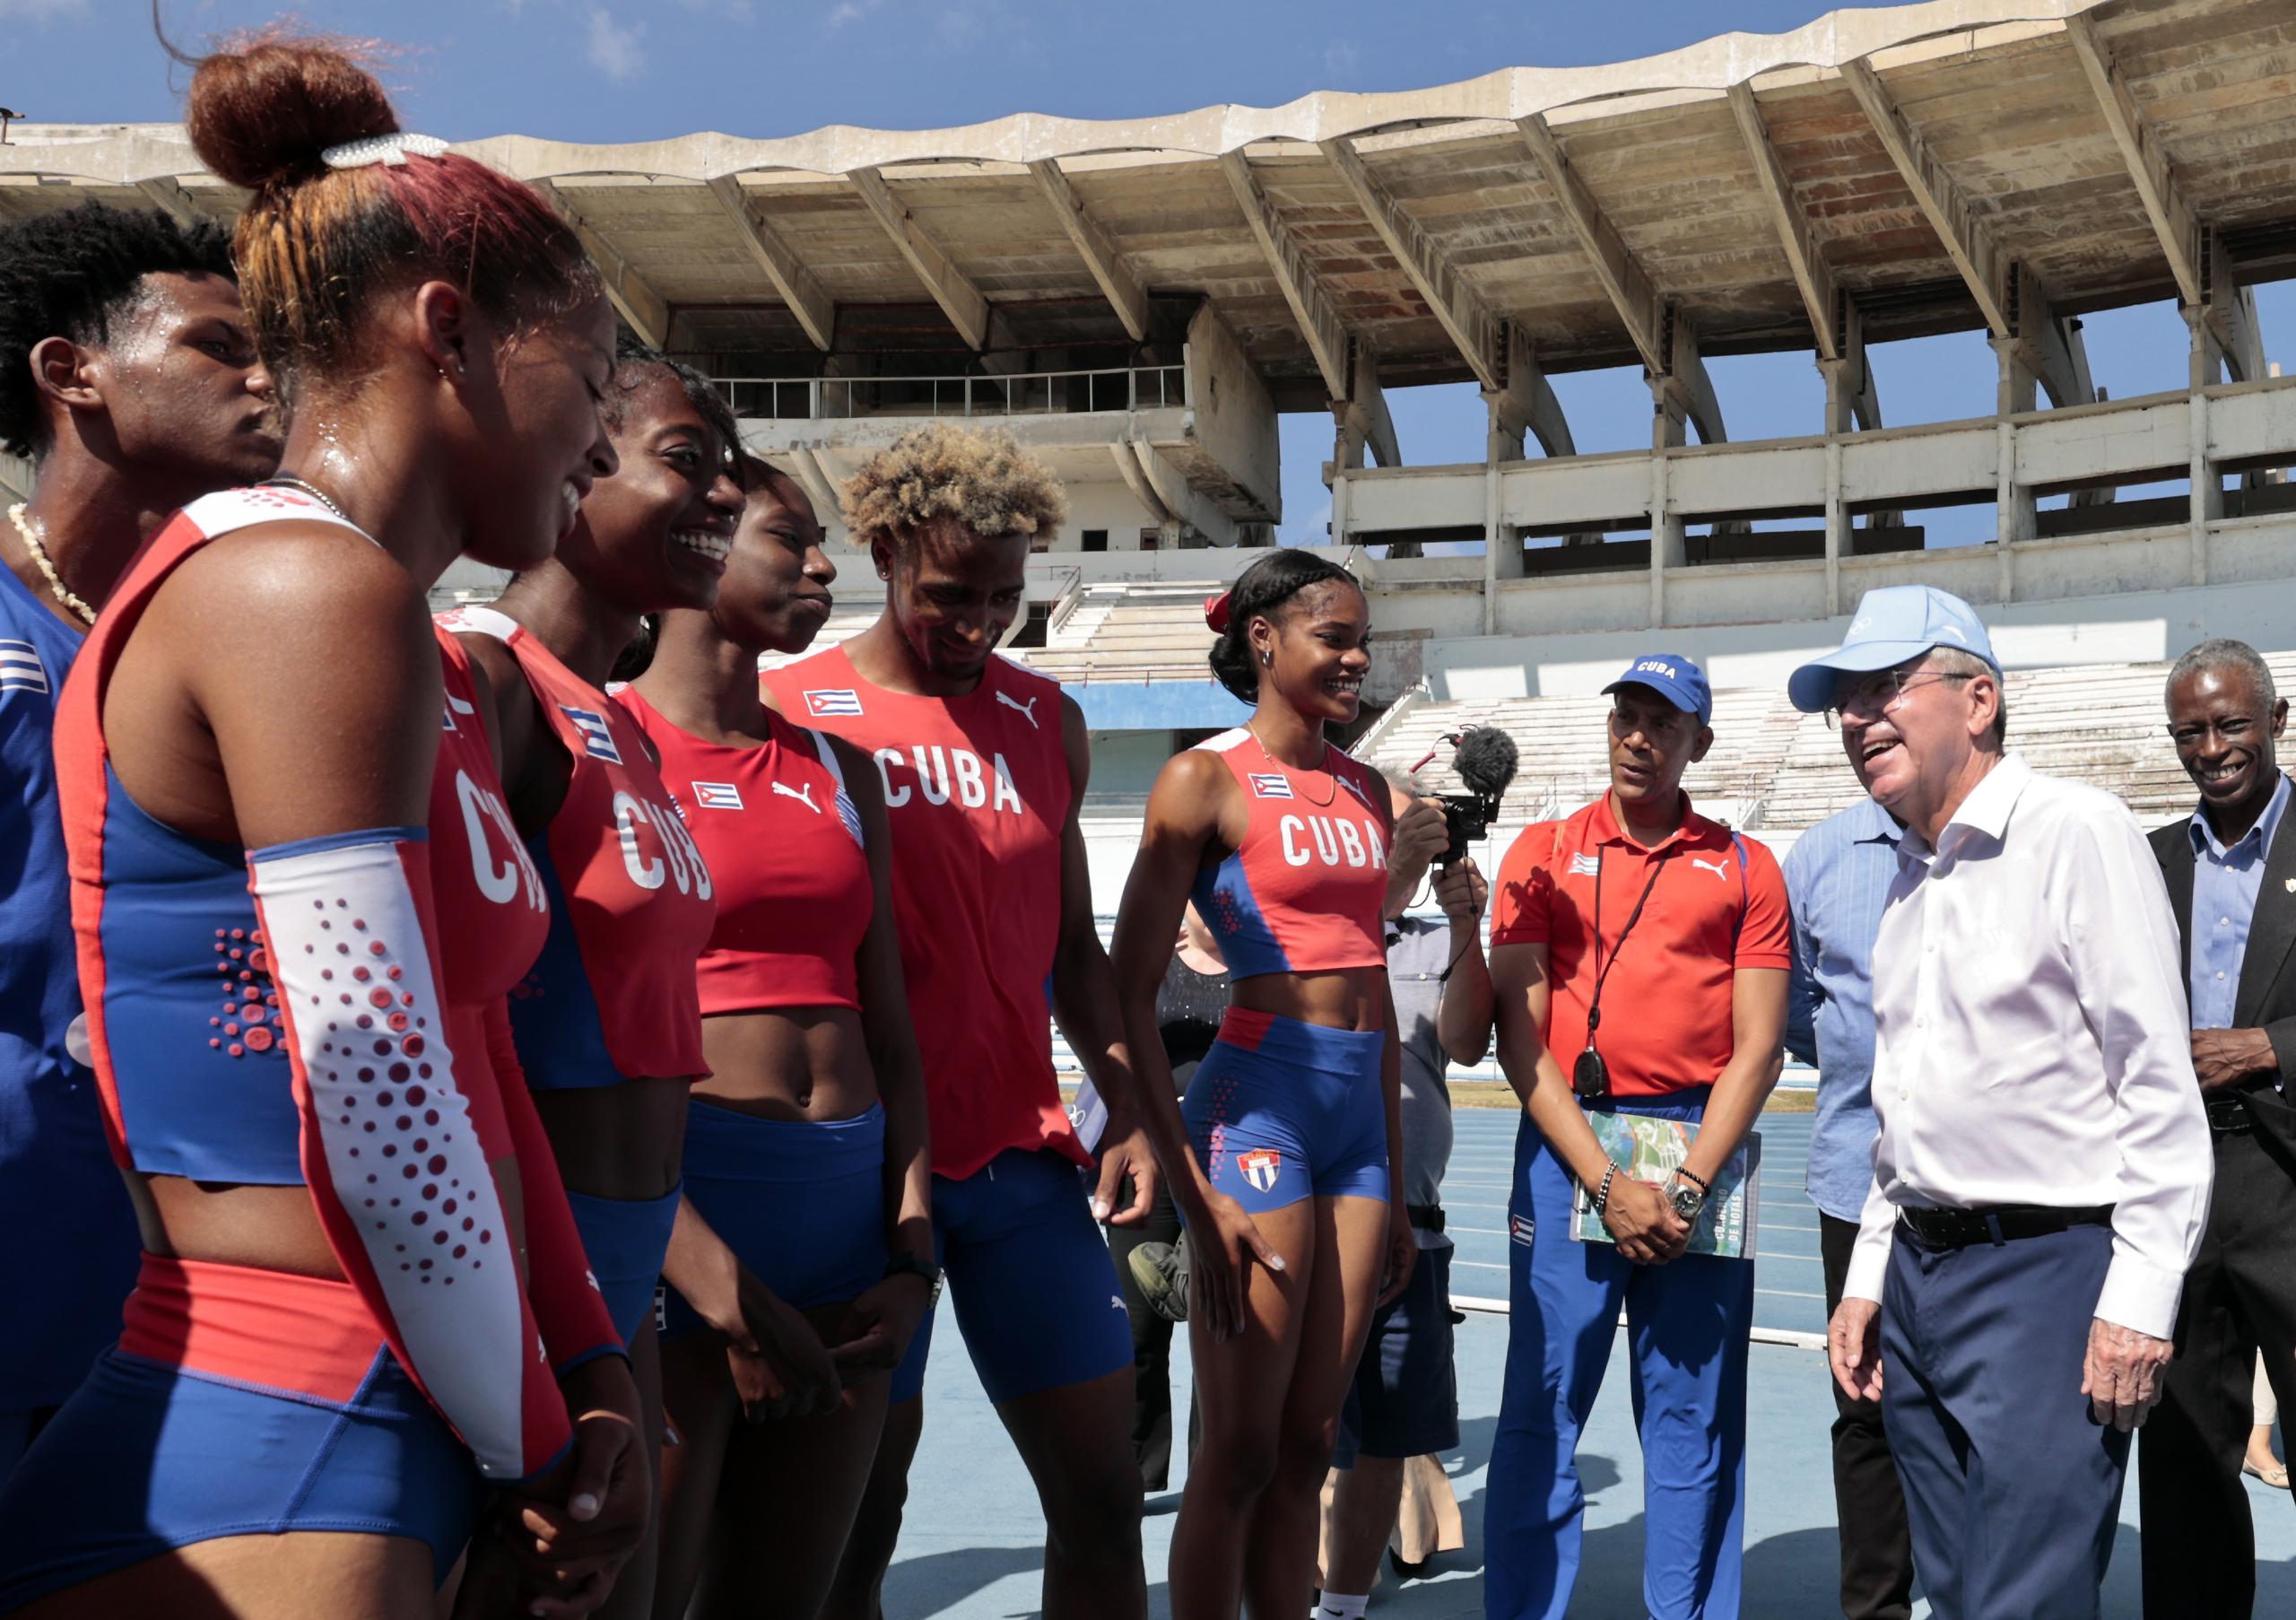 Cuba ganó seis medallas en el pasado Campeonato Panamericano de Atletismo U20, incluyendo tres de oro.